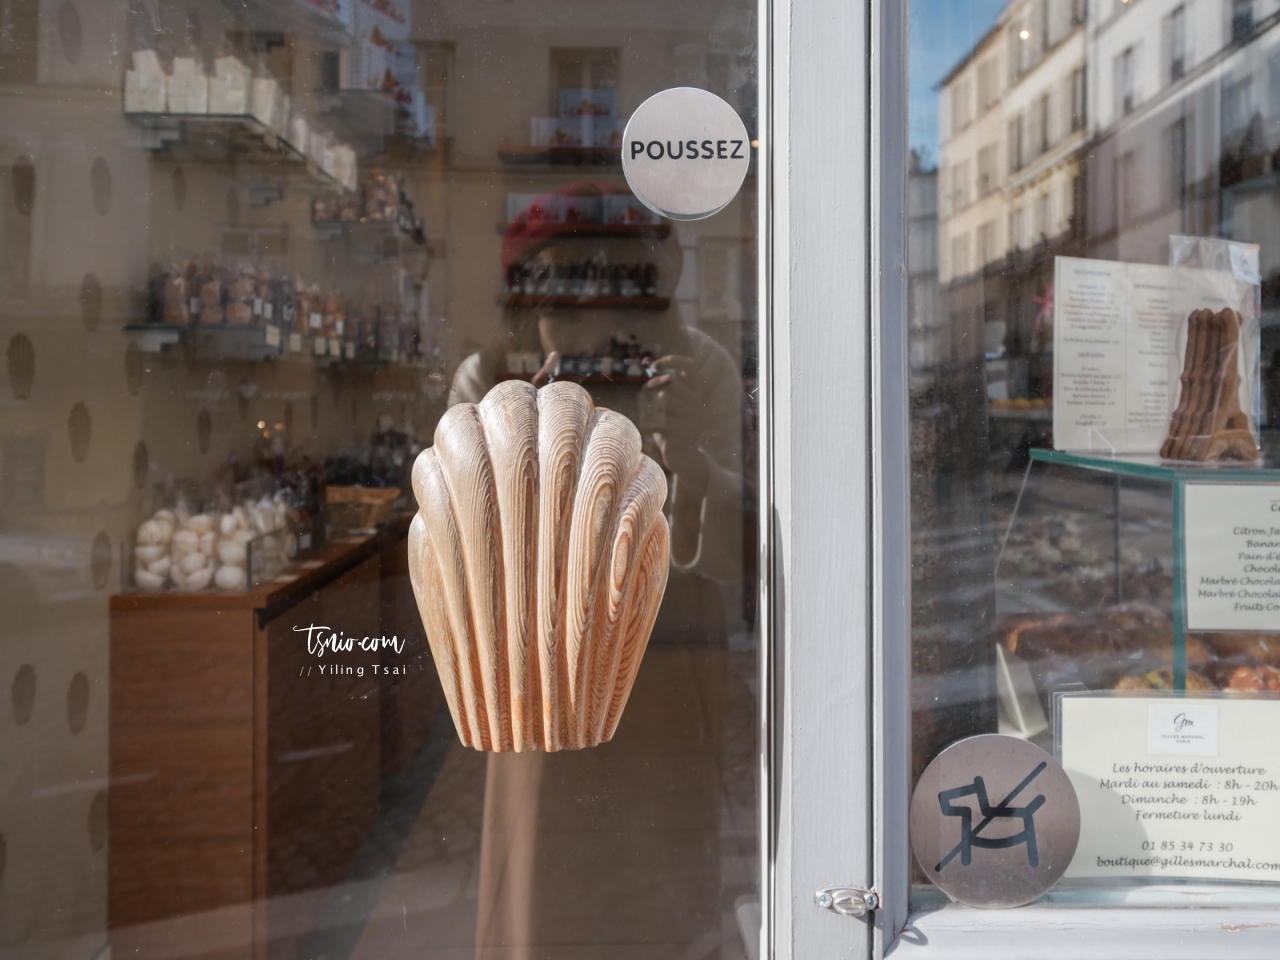 法國巴黎甜點推薦 Pâtisserie Gilles Marchal 蒙馬特可愛瑪德蓮甜點店